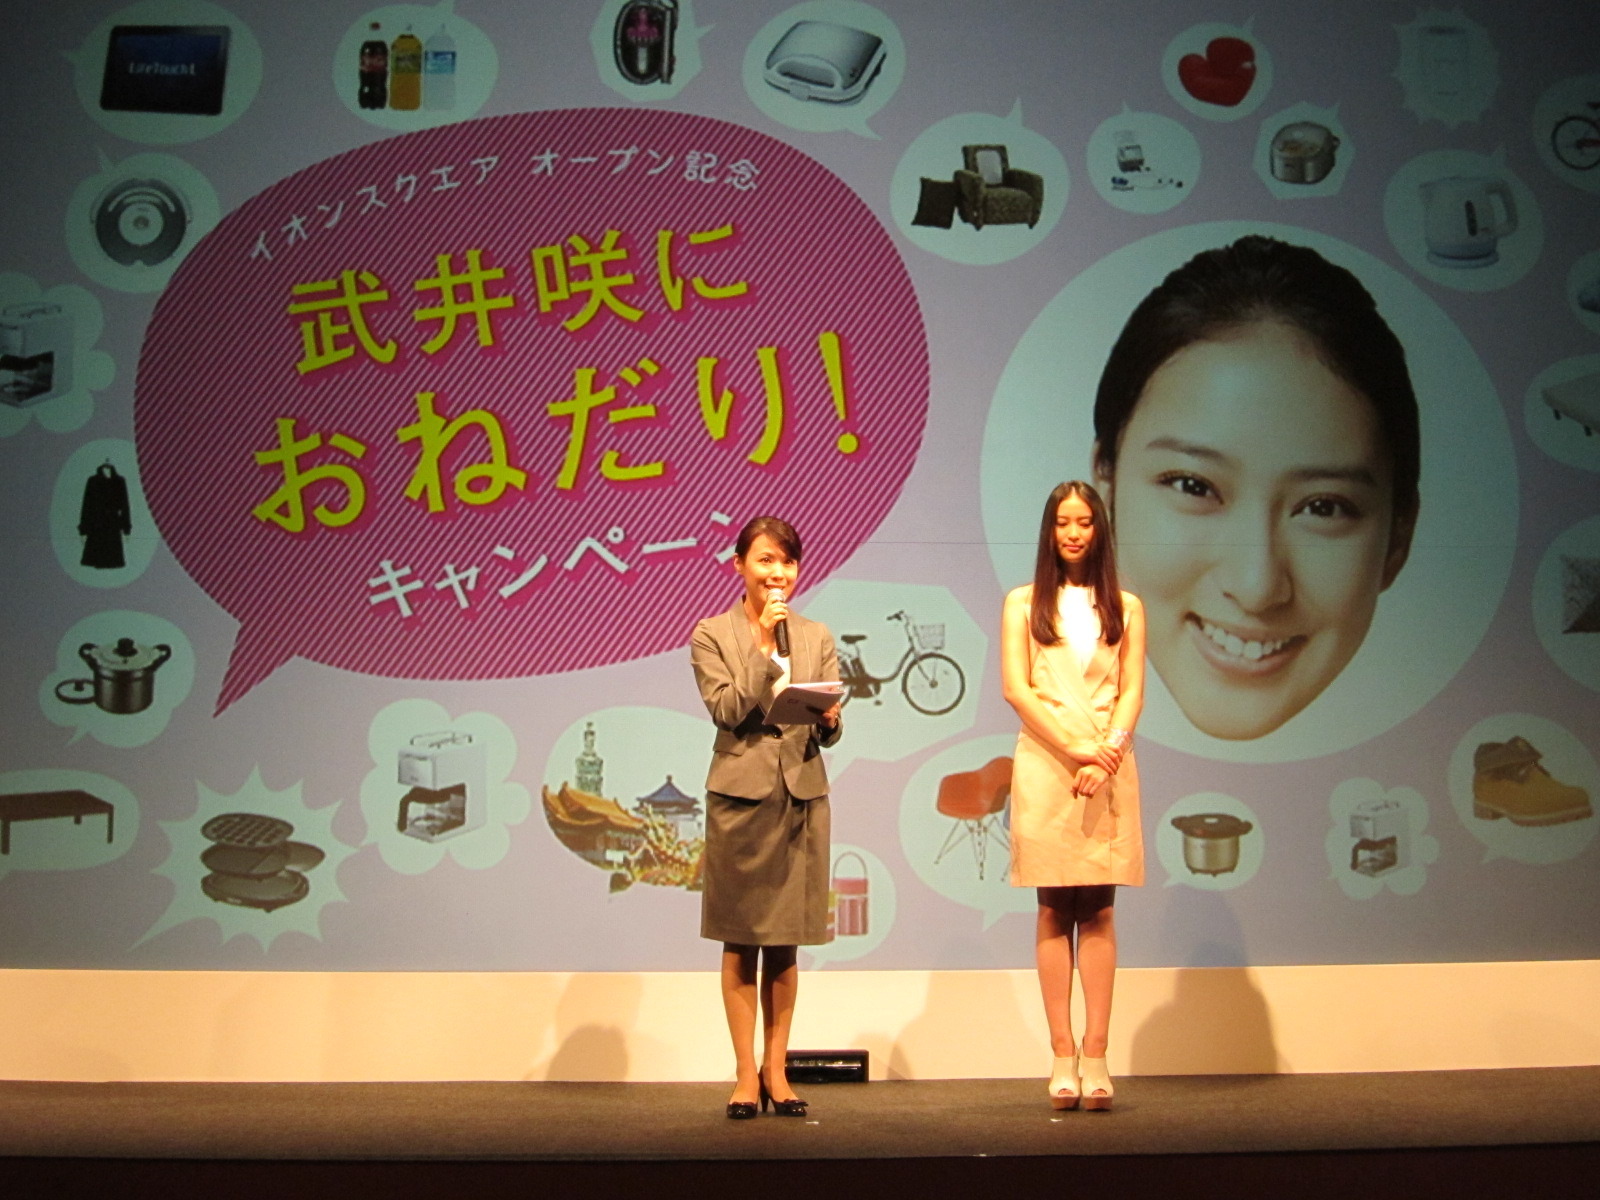 イオン 総合ポータルサイト イオンスクエア をオープン 発表イベントに武井咲 5枚目の写真 画像 Rbb Today